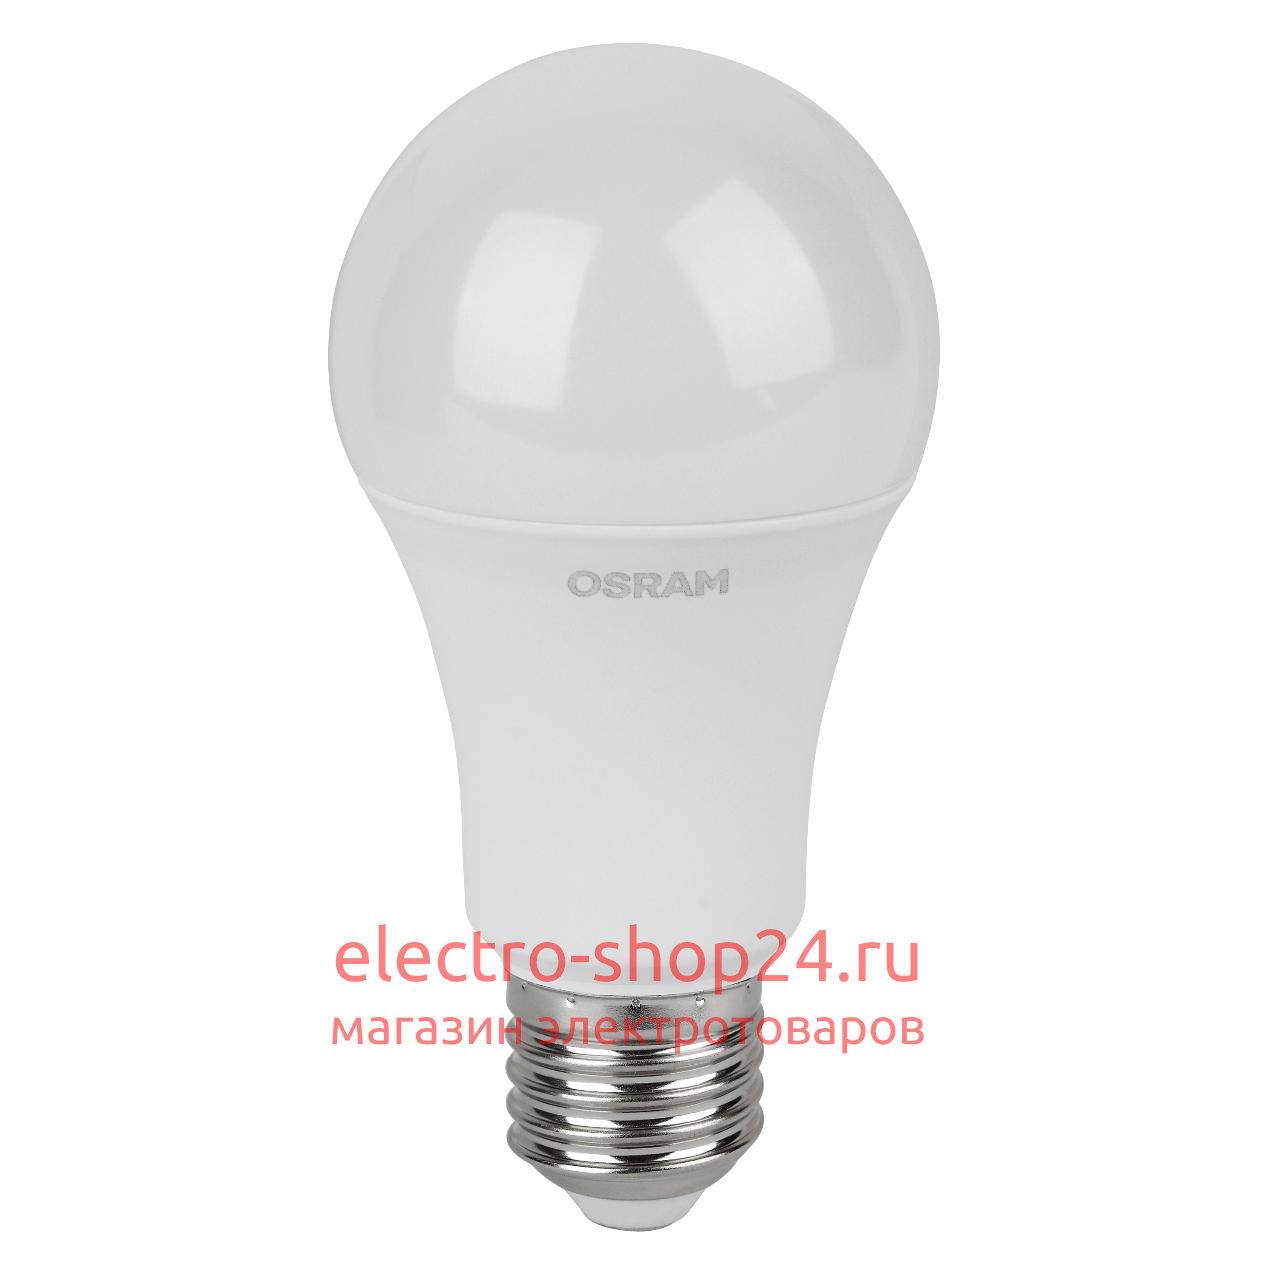 Лампа светодиодная OSRAM 12W 3000K LED Value LVCLA100 12SW/830 (100W) 230V E27 4058075578975 4058075578975 - магазин электротехники Electroshop